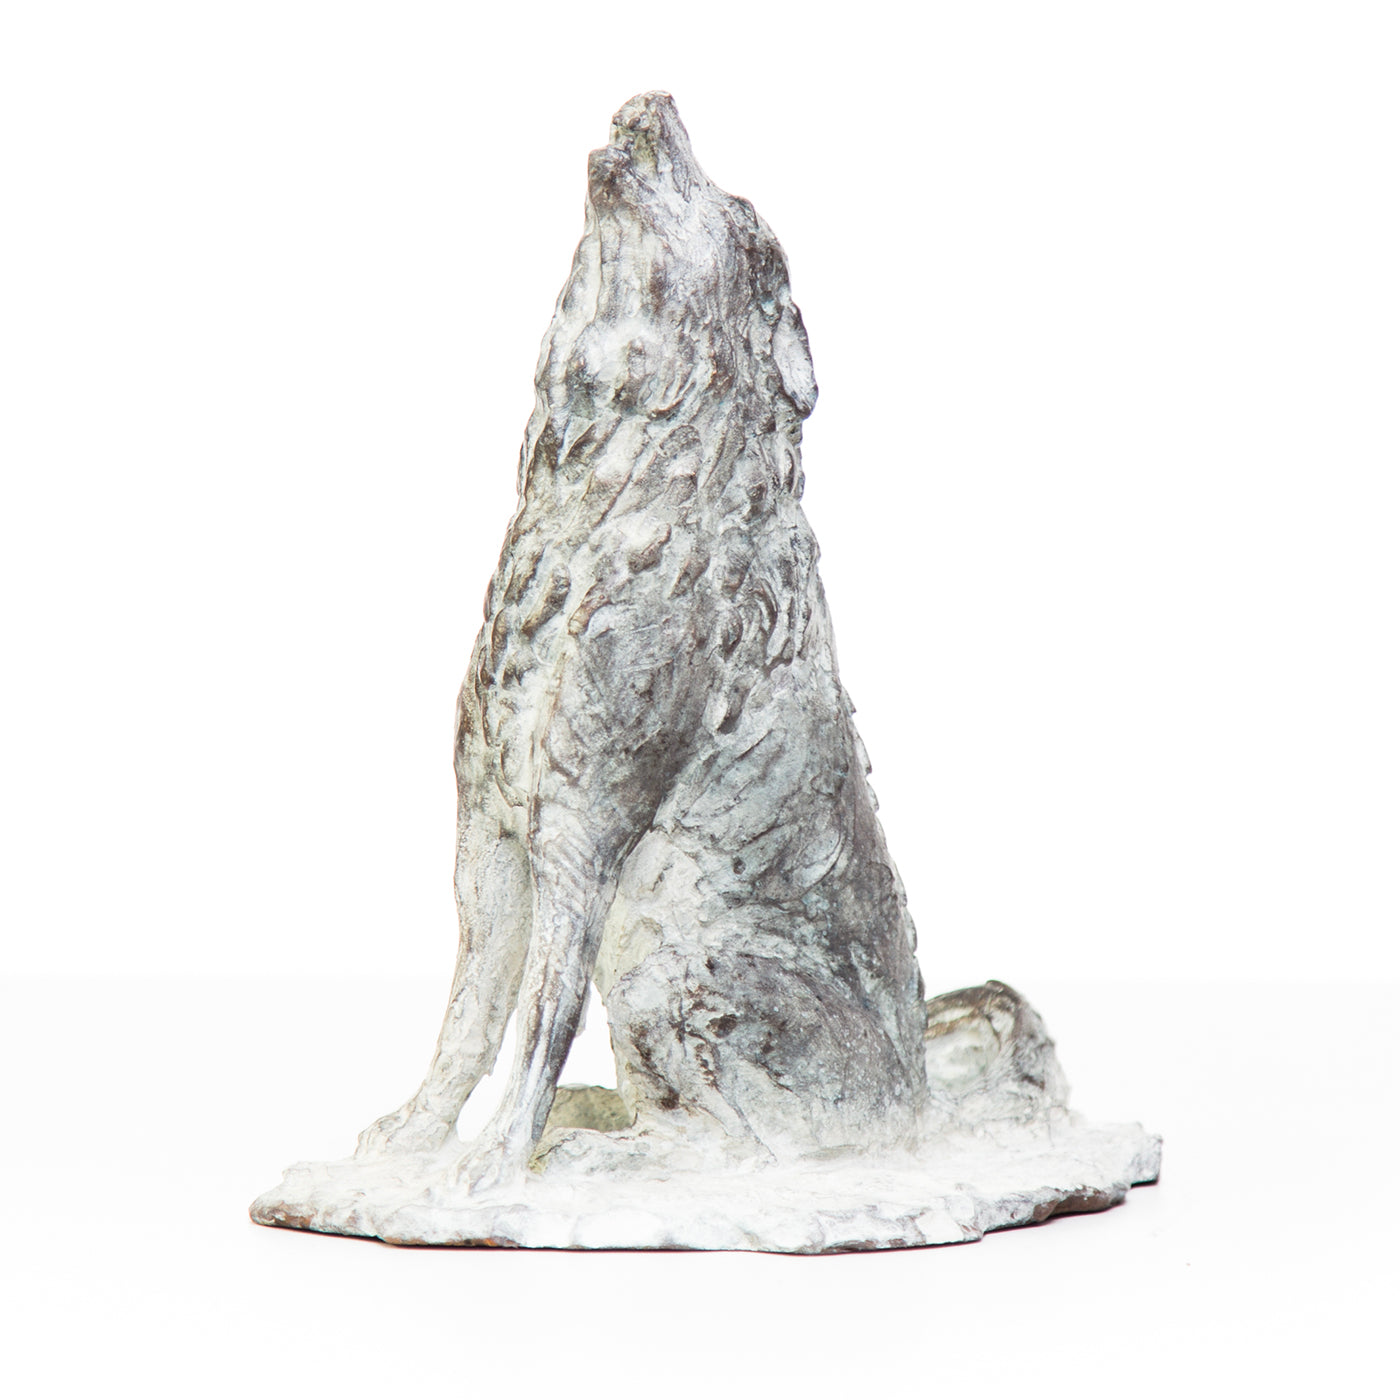 Howling Wolf Sculpture - Alternative view 3